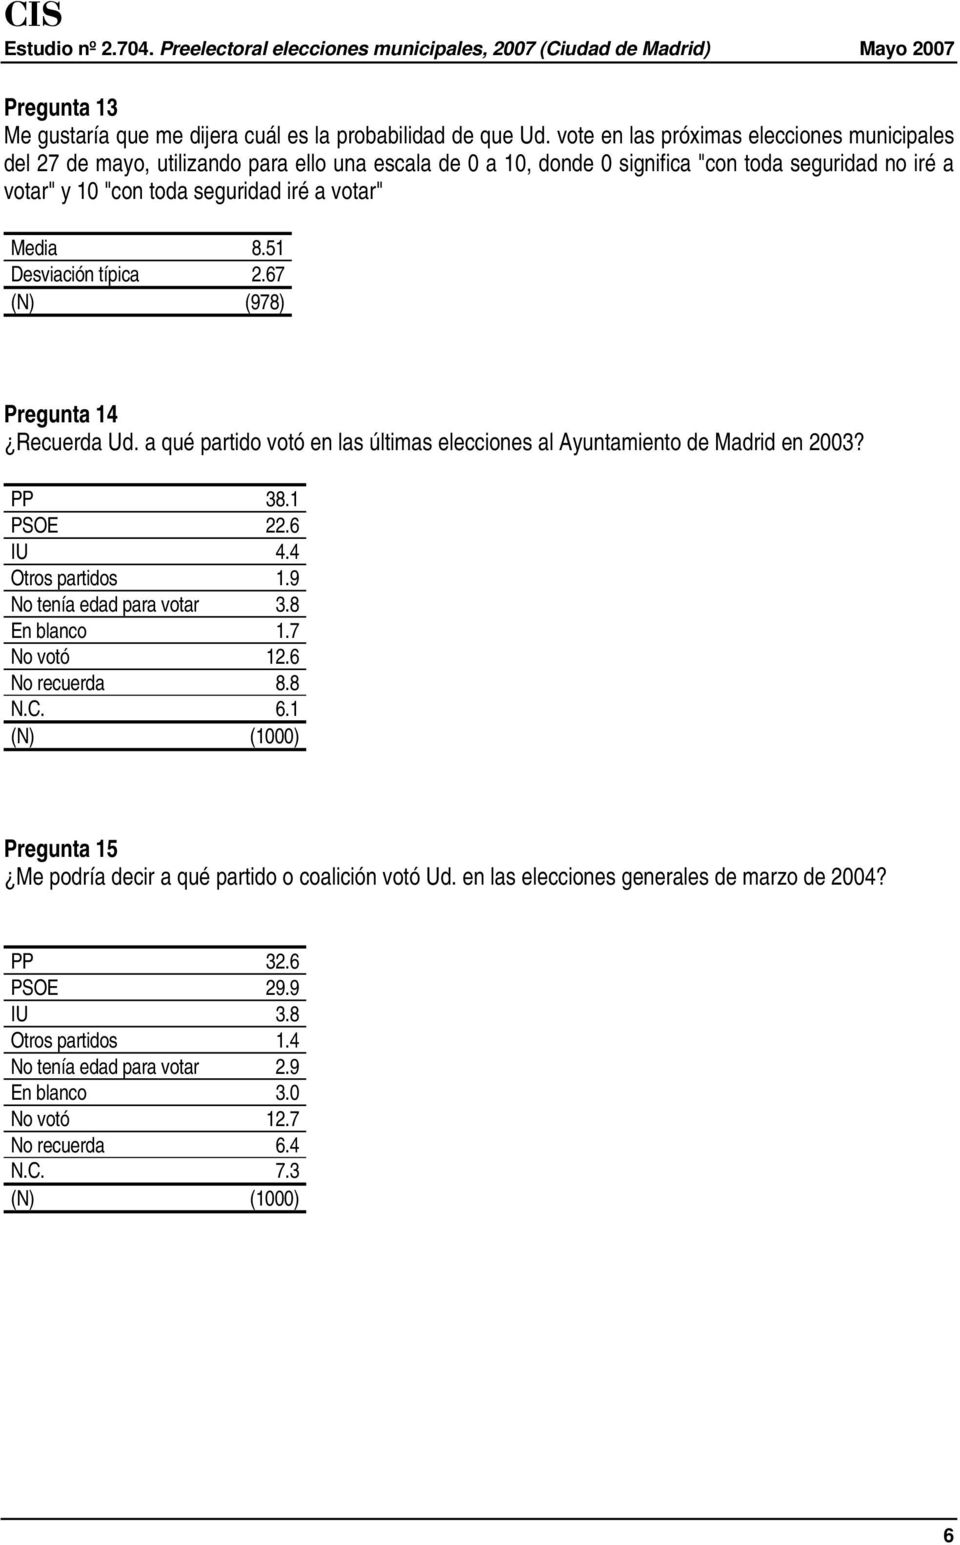 Media 8.51 Desviación típica 2.67 (N) (978) Pregunta 14 Recuerda Ud. a qué partido votó en las últimas elecciones al Ayuntamiento de Madrid en 2003? PP 38.1 PSOE 22.6 IU 4.4 Otros partidos 1.